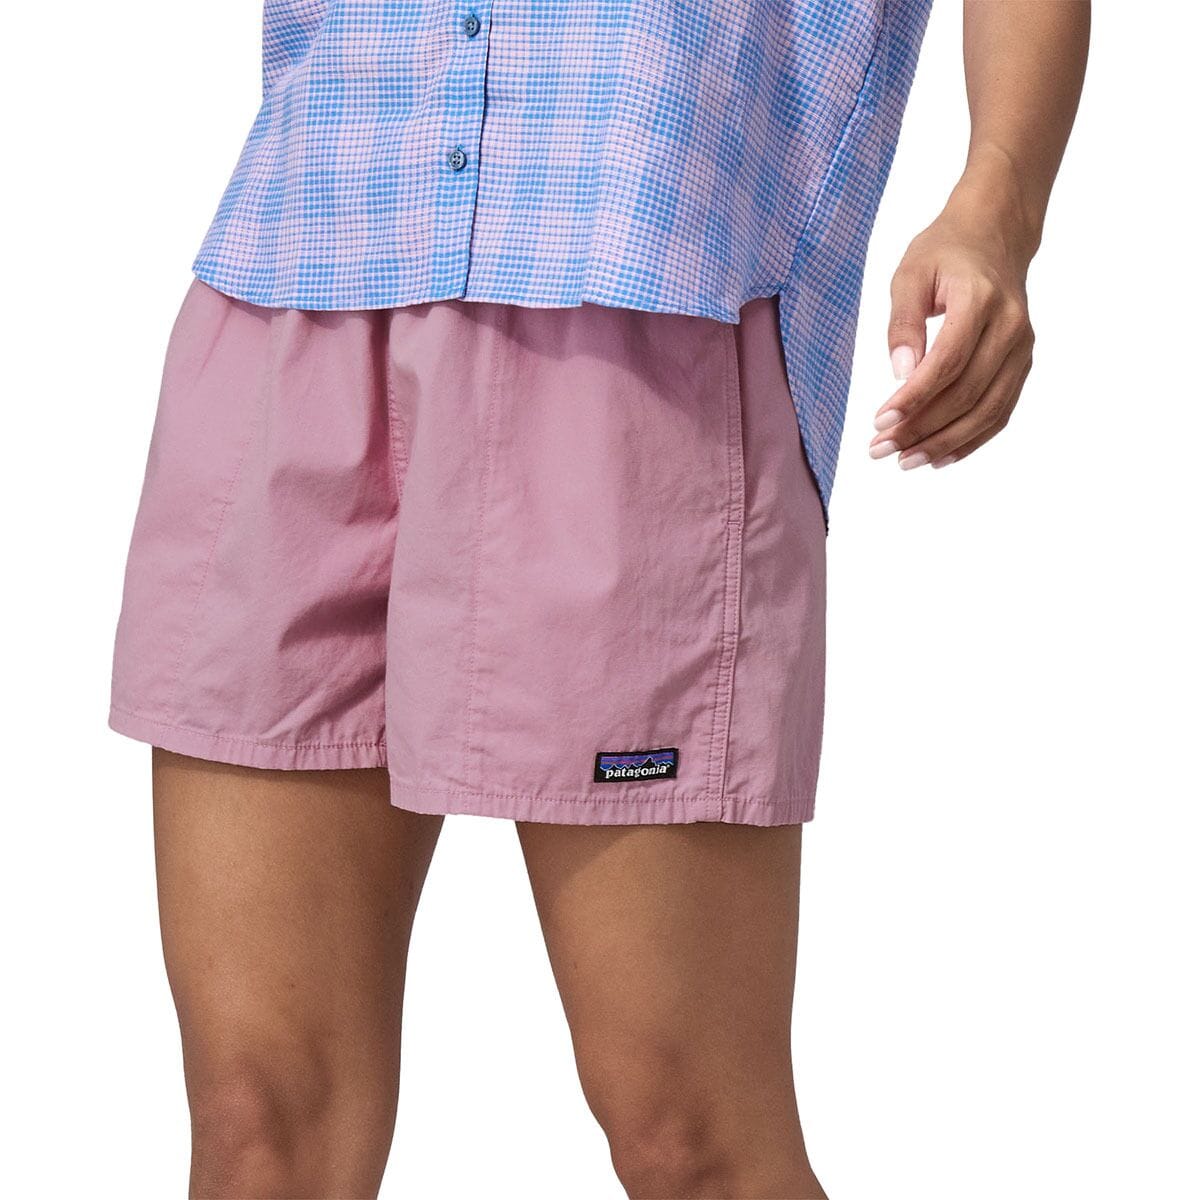 Funhoggers Shorts - Women